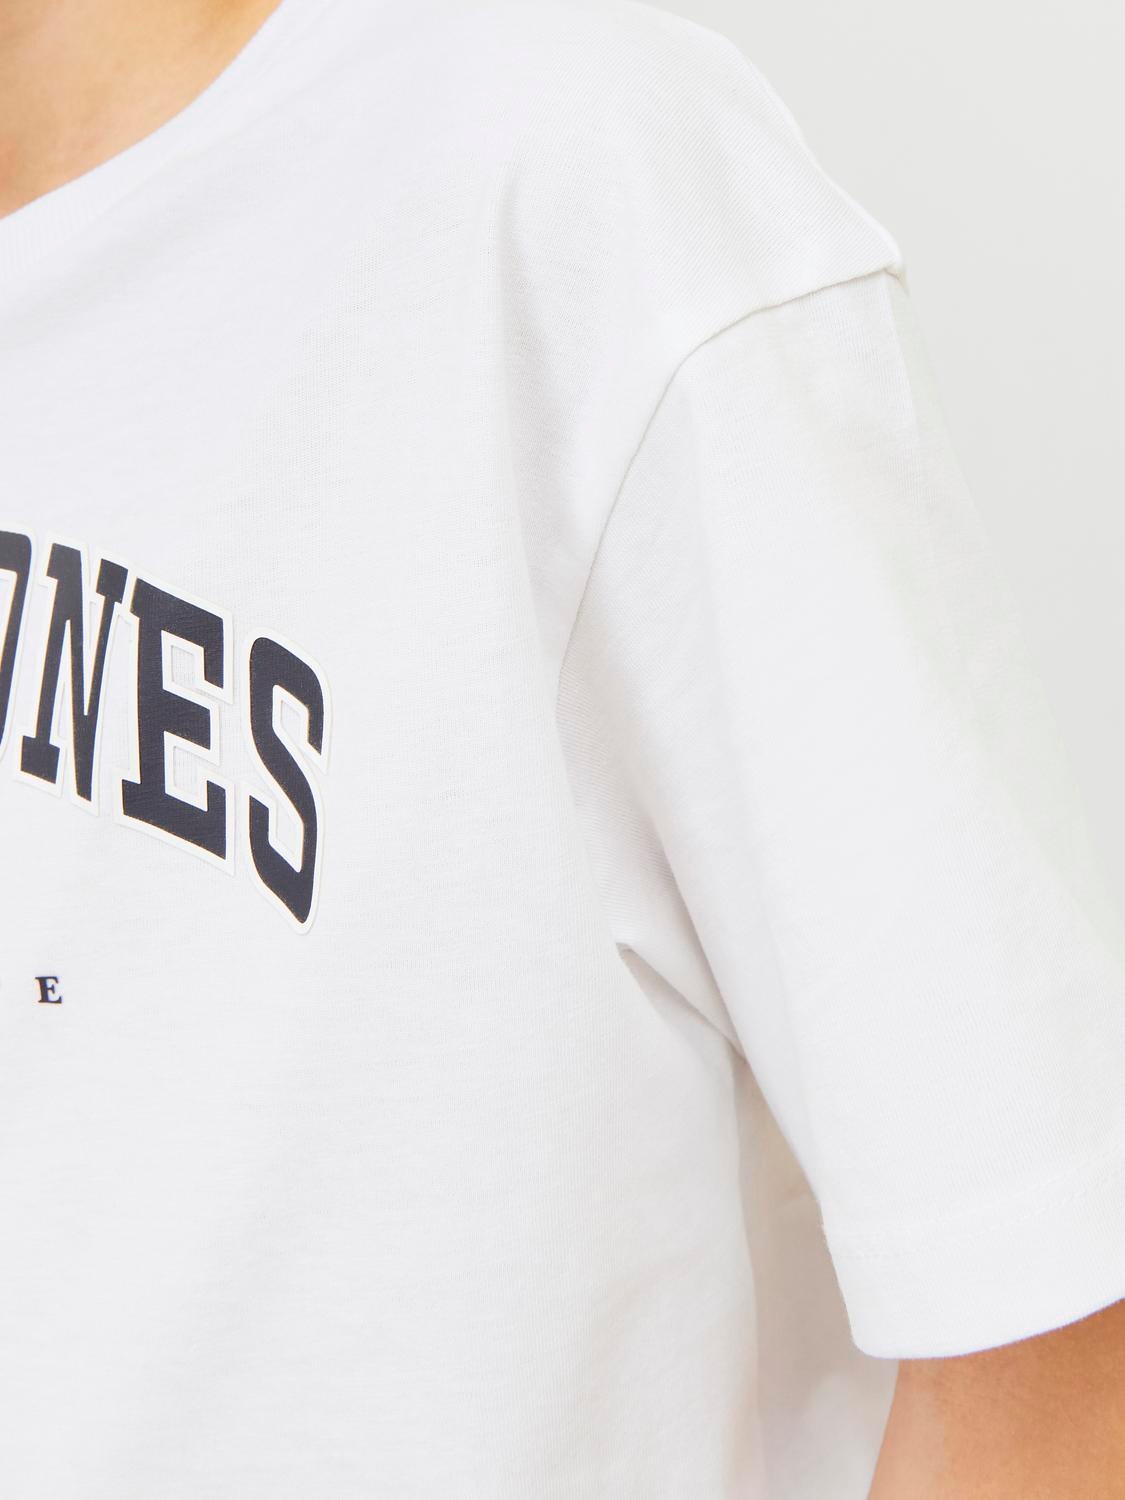 Jack & Jones Z logo T-shirt Dla chłopców -White - 12258924